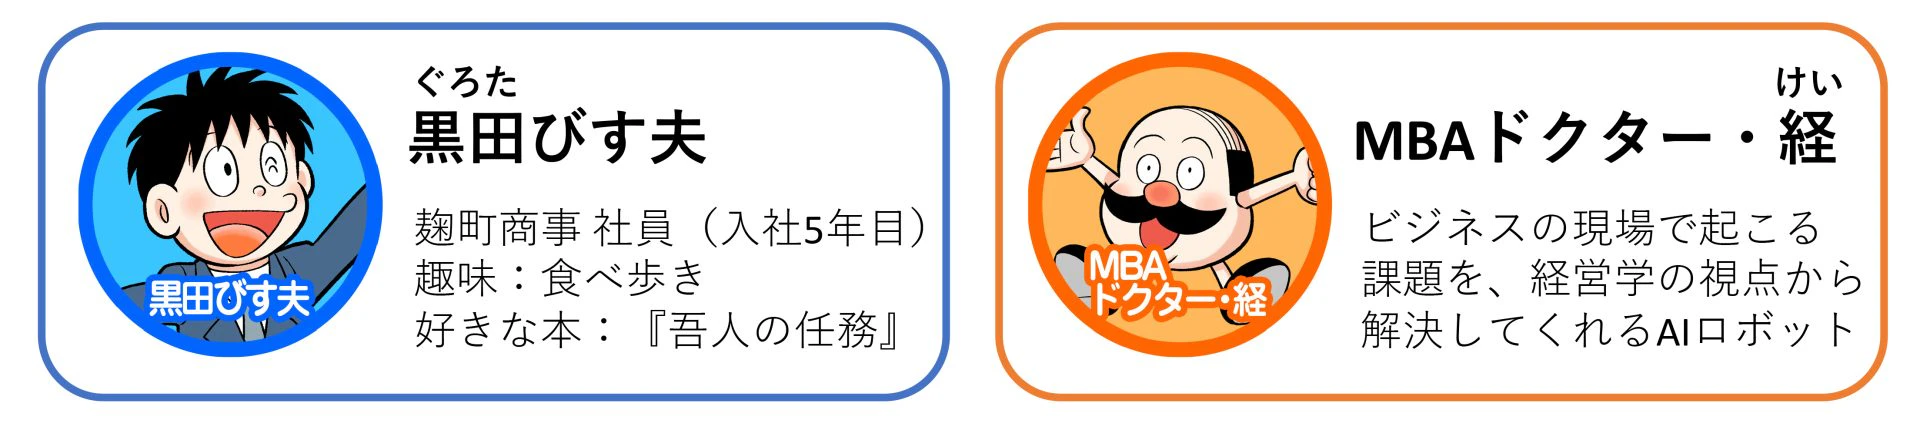 「マンガでわかるMBA100の基本」の登場人物 黒田びす夫とMBAドクター・経